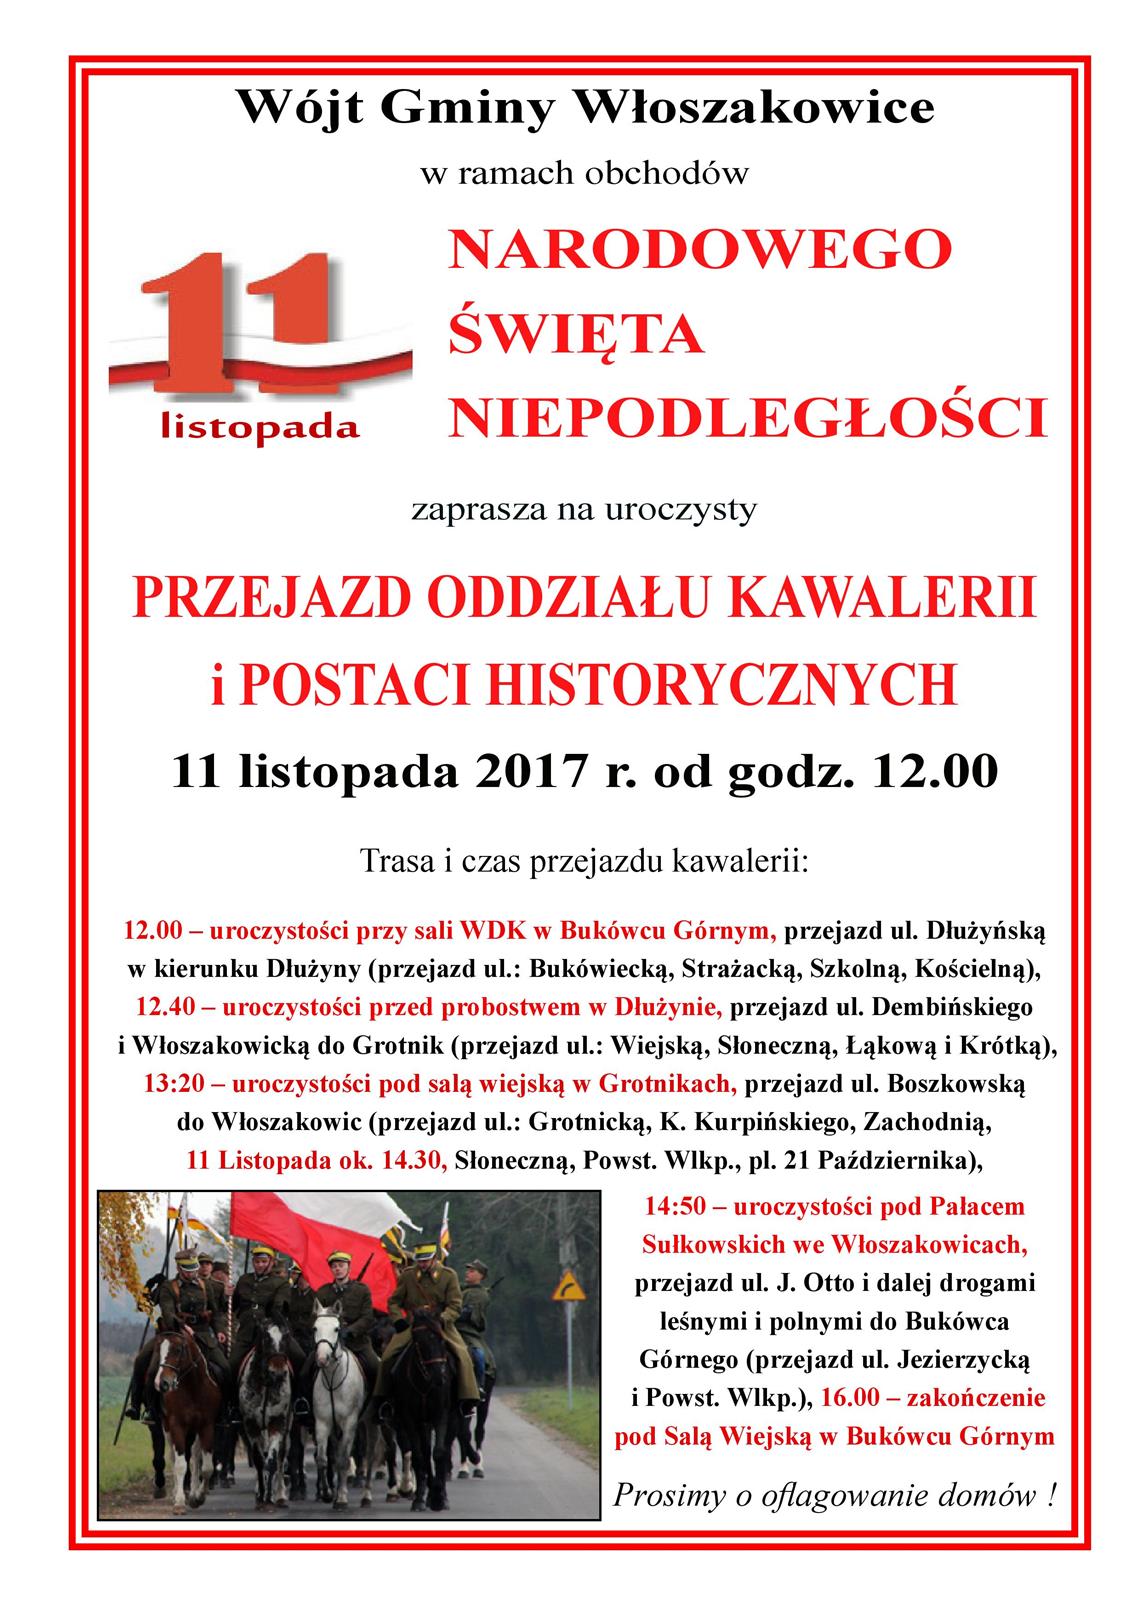 11 LISTOPADA 2017 - zaproszenie